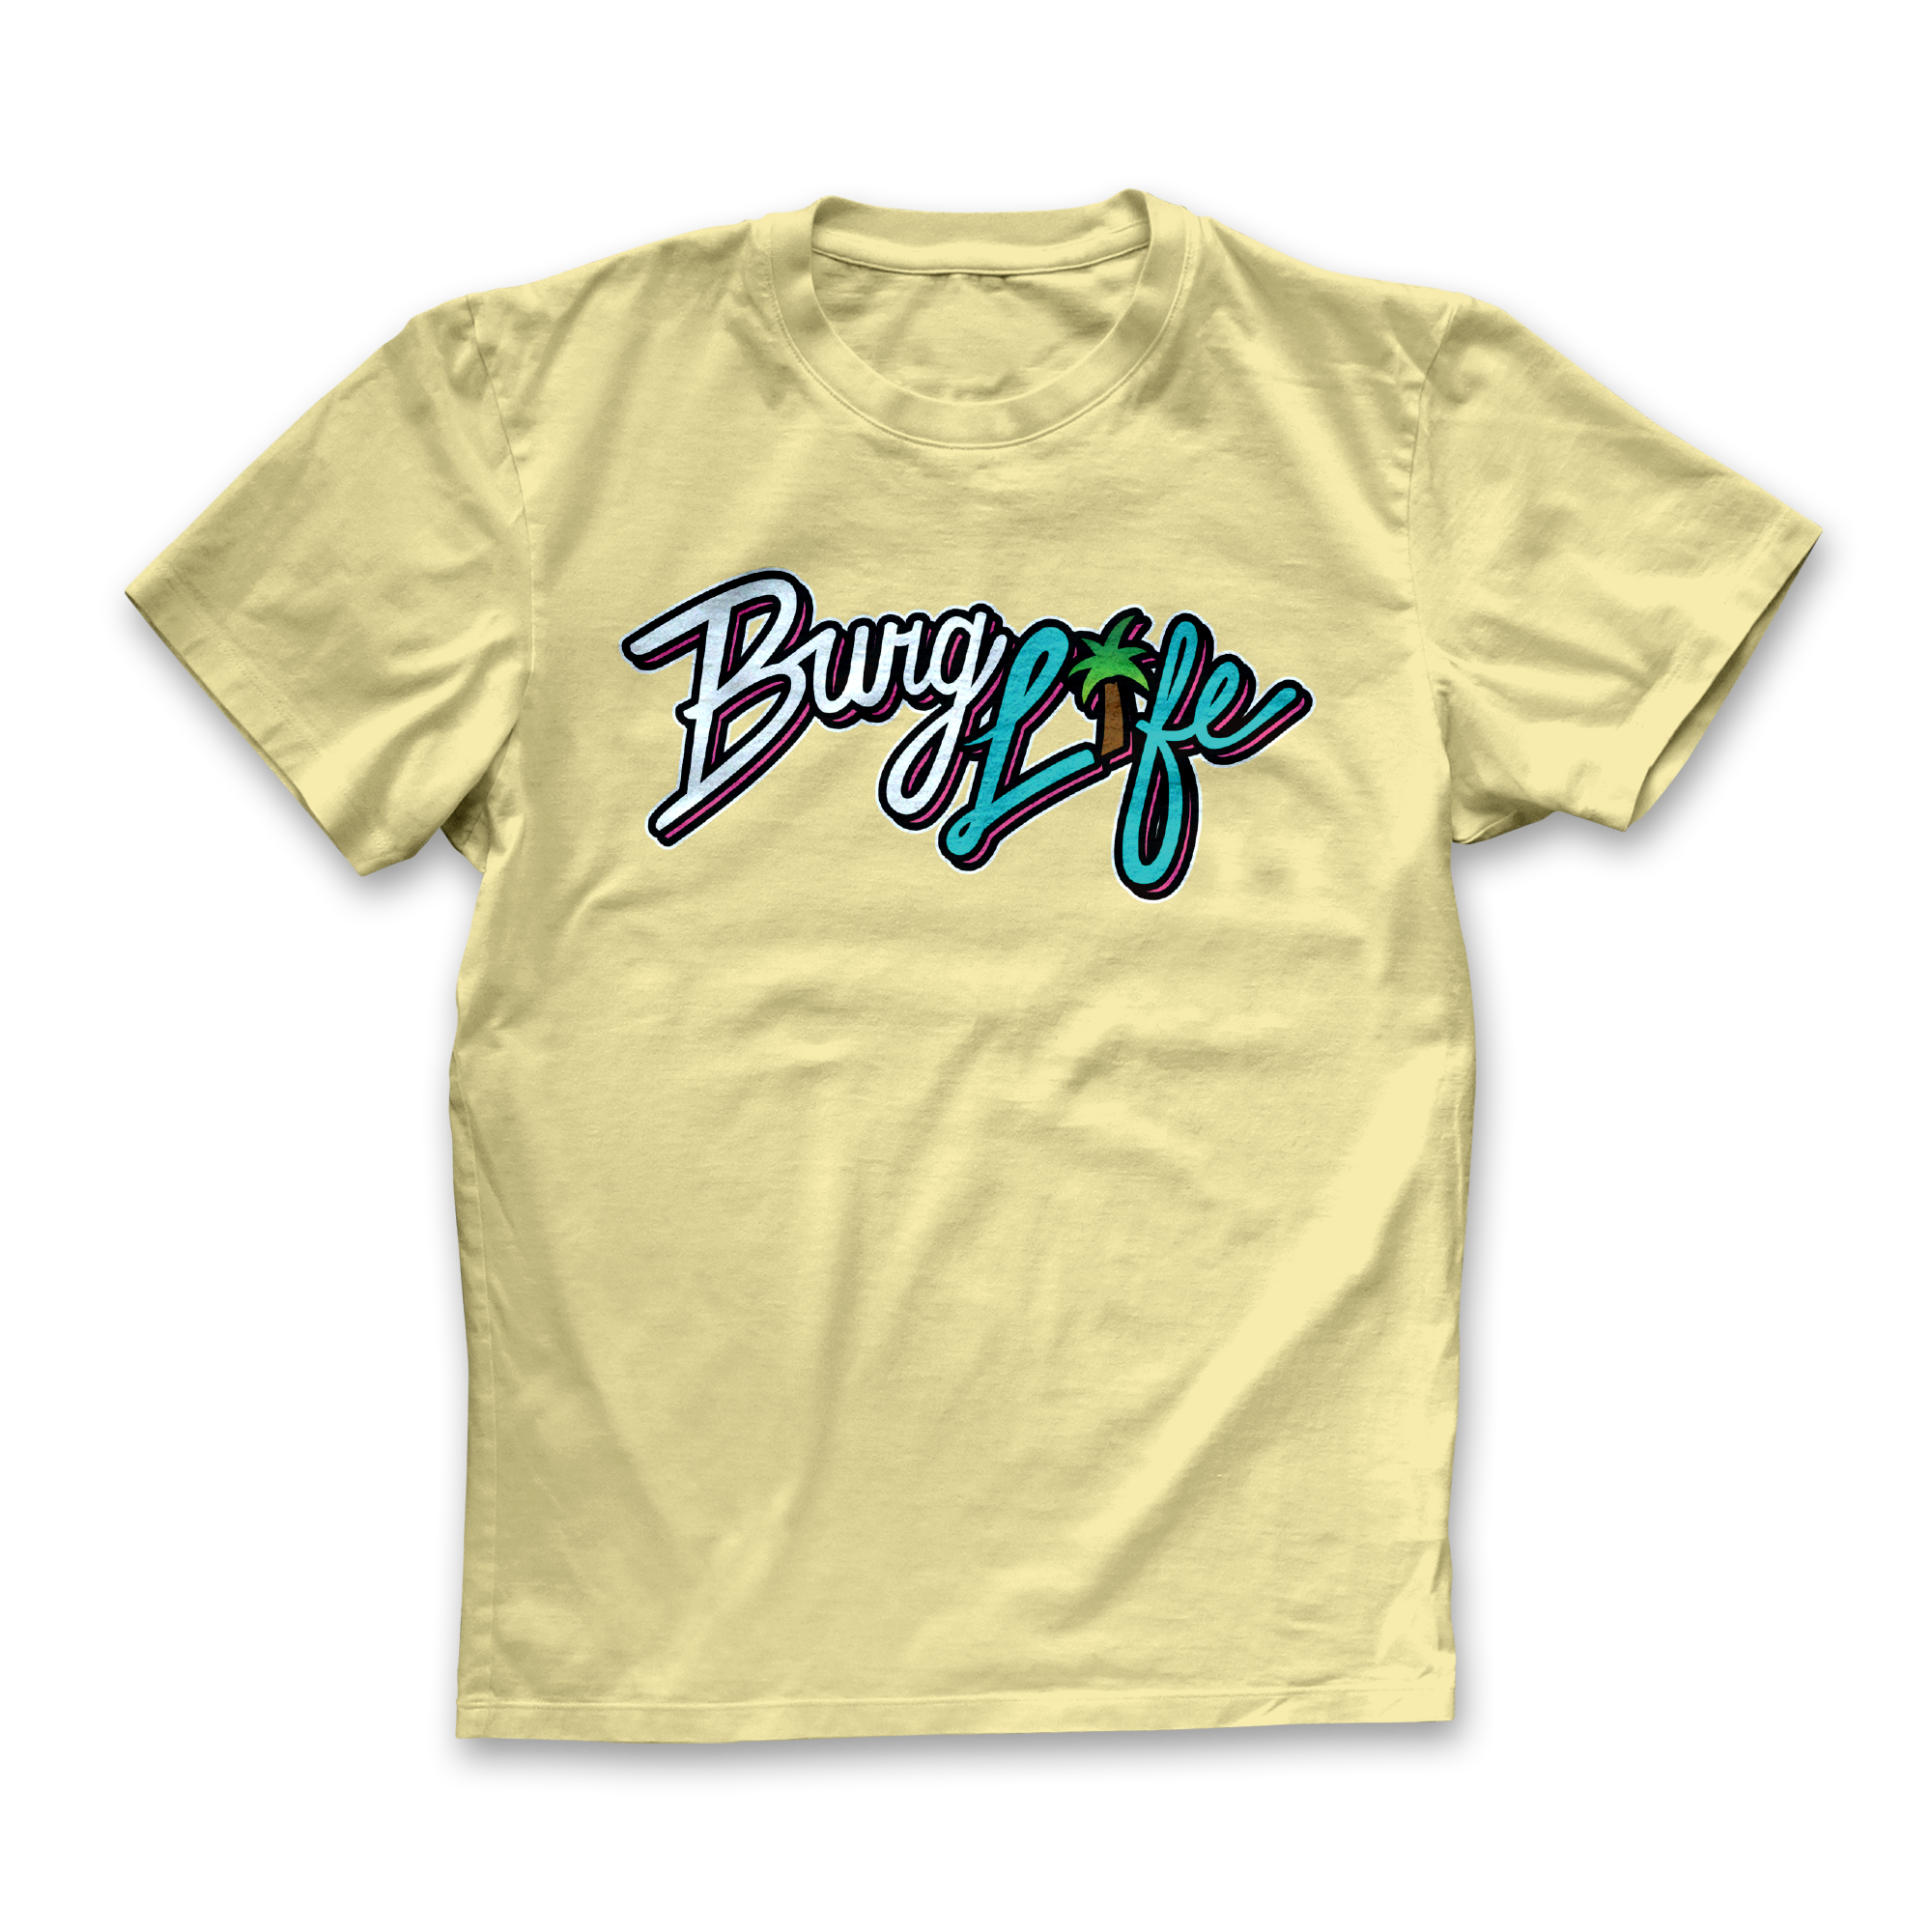 Banana Burg Life T-Shirt Front